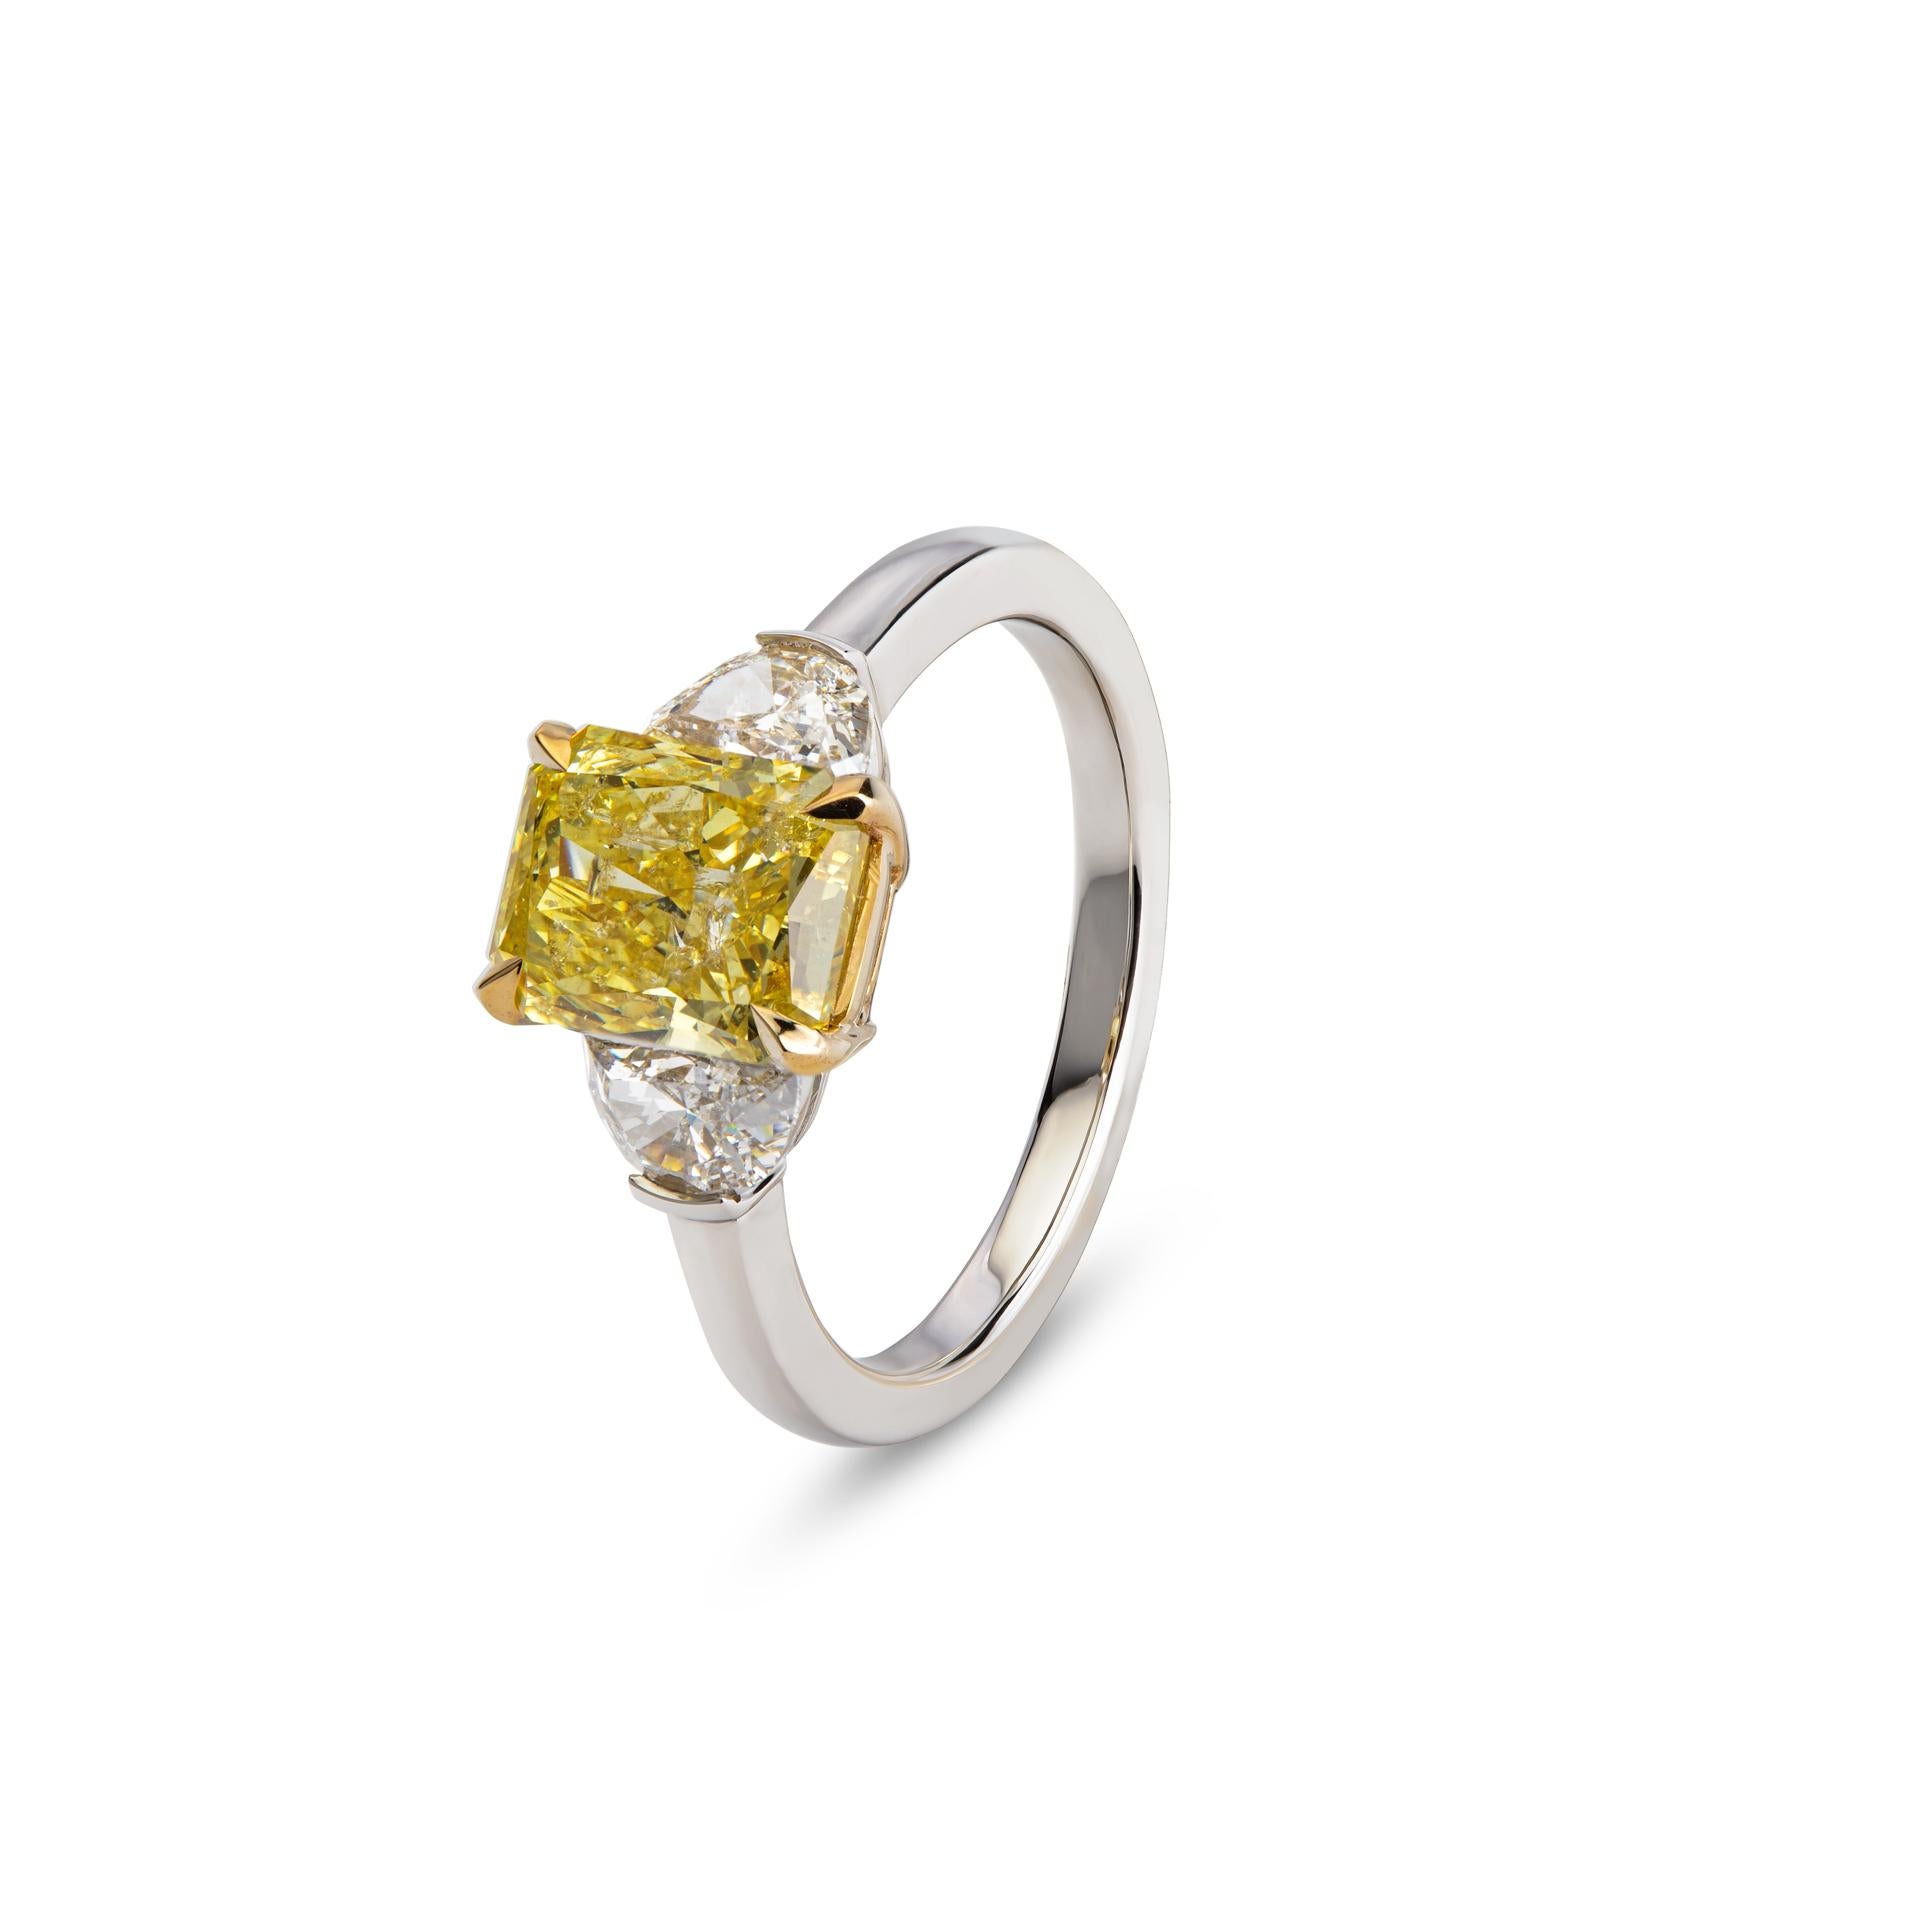 Sein Herzstück ist ein strahlender, intensiv gelber Diamant von 2,16 Karat, der vom GIA zertifiziert wurde. Der zentrale Stein mit seinem leuchtenden Farbton zieht die Aufmerksamkeit auf sich und strahlt Eleganz aus. Der zentrale Diamant wird von